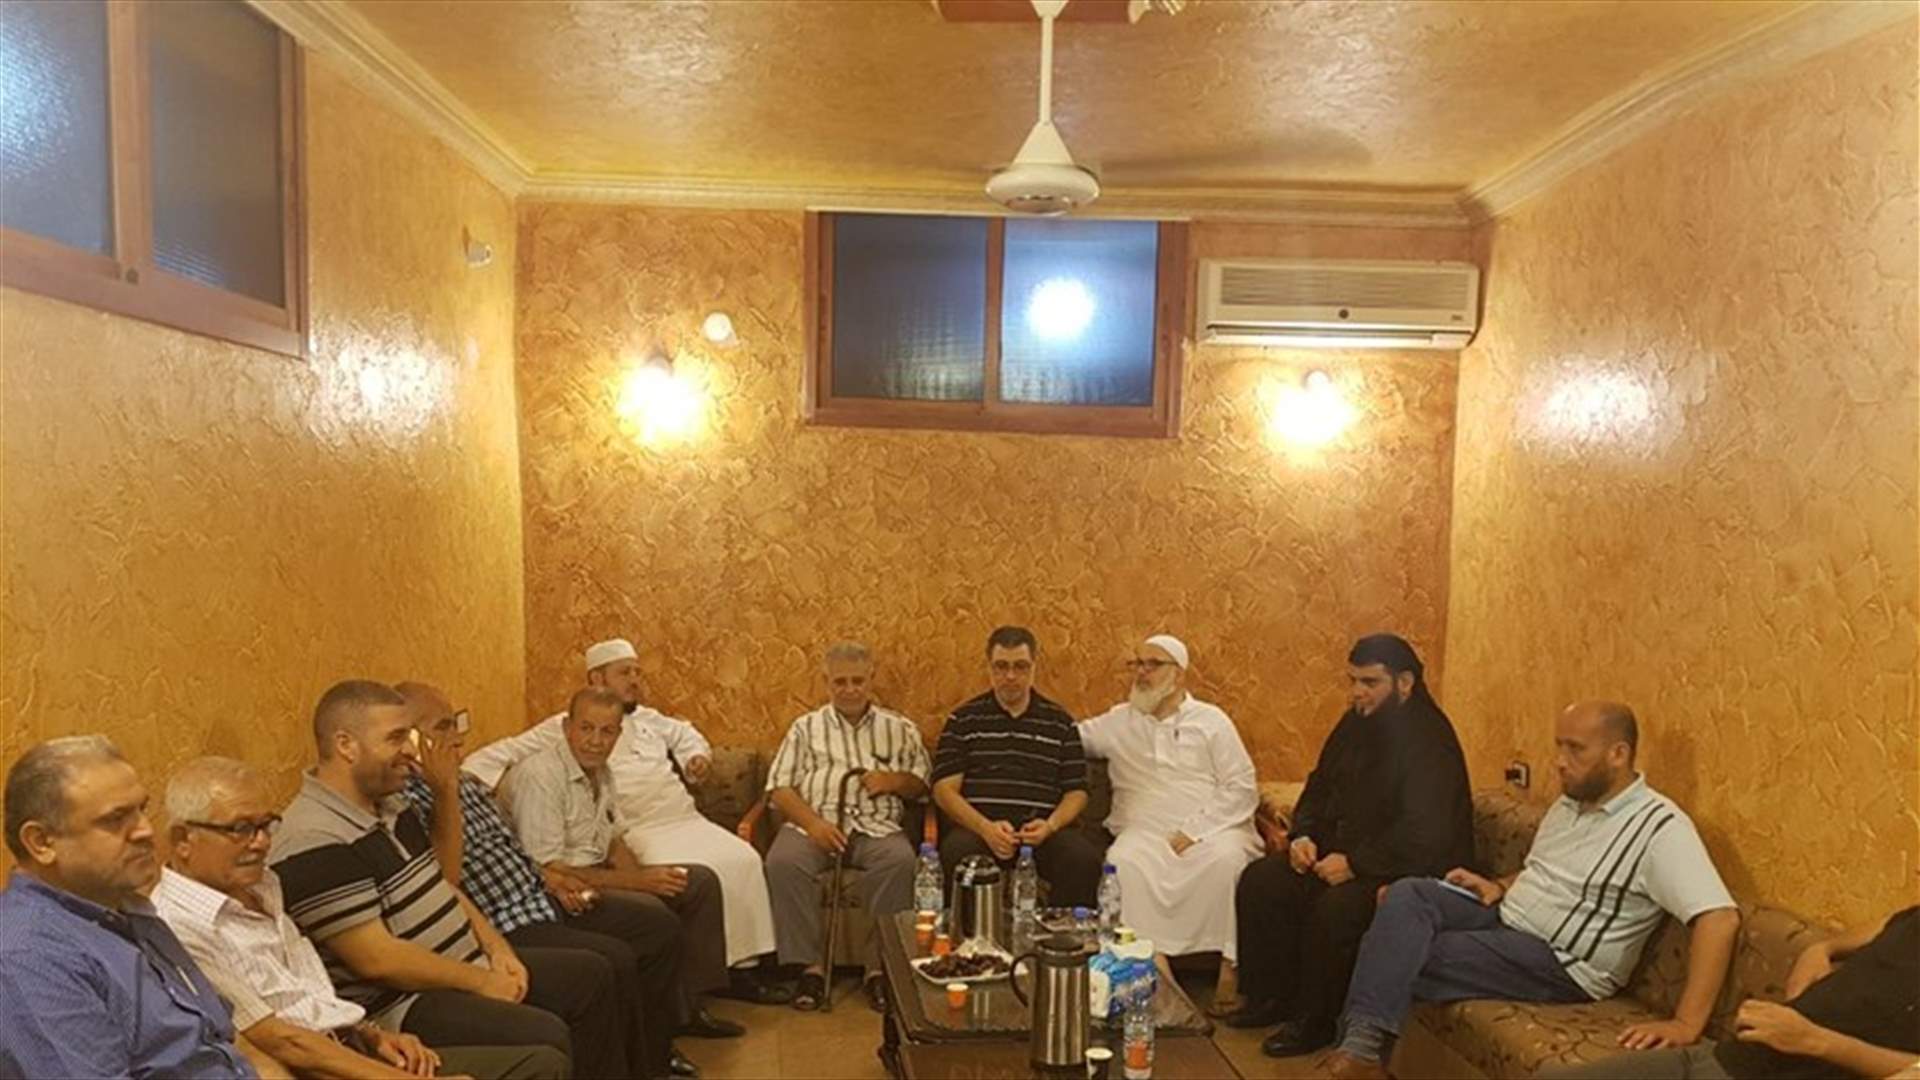 بالصور- اجتماع في منزل أبو طارق السعدي واتفاق على وقف إطلاق النار في عين الحلوة